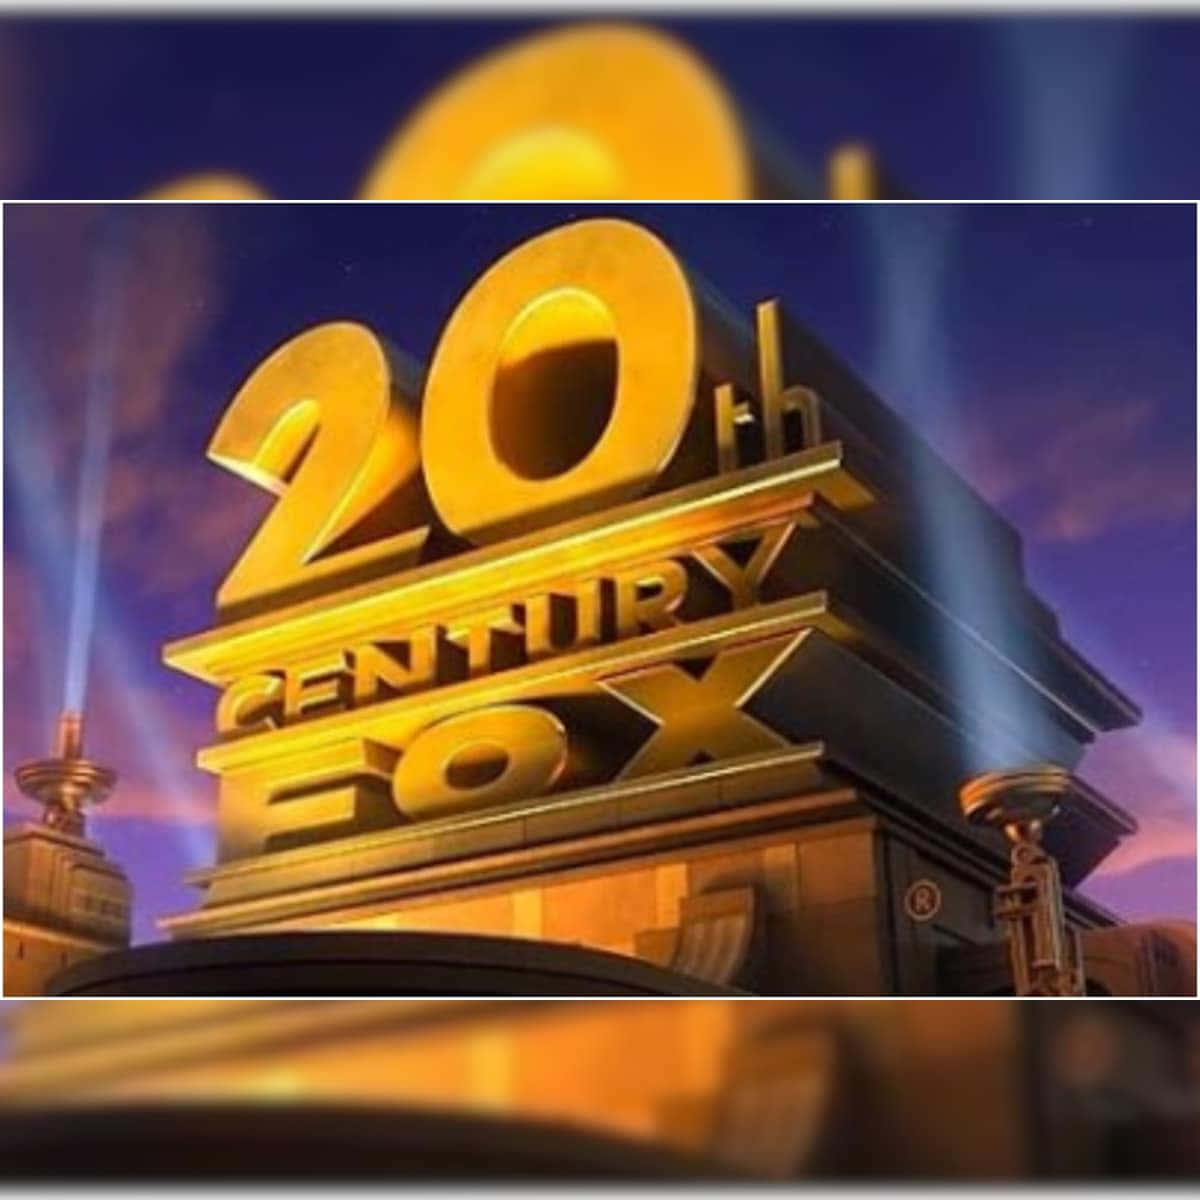 20thcentury Fox Logo Mit Lichtern Darauf.